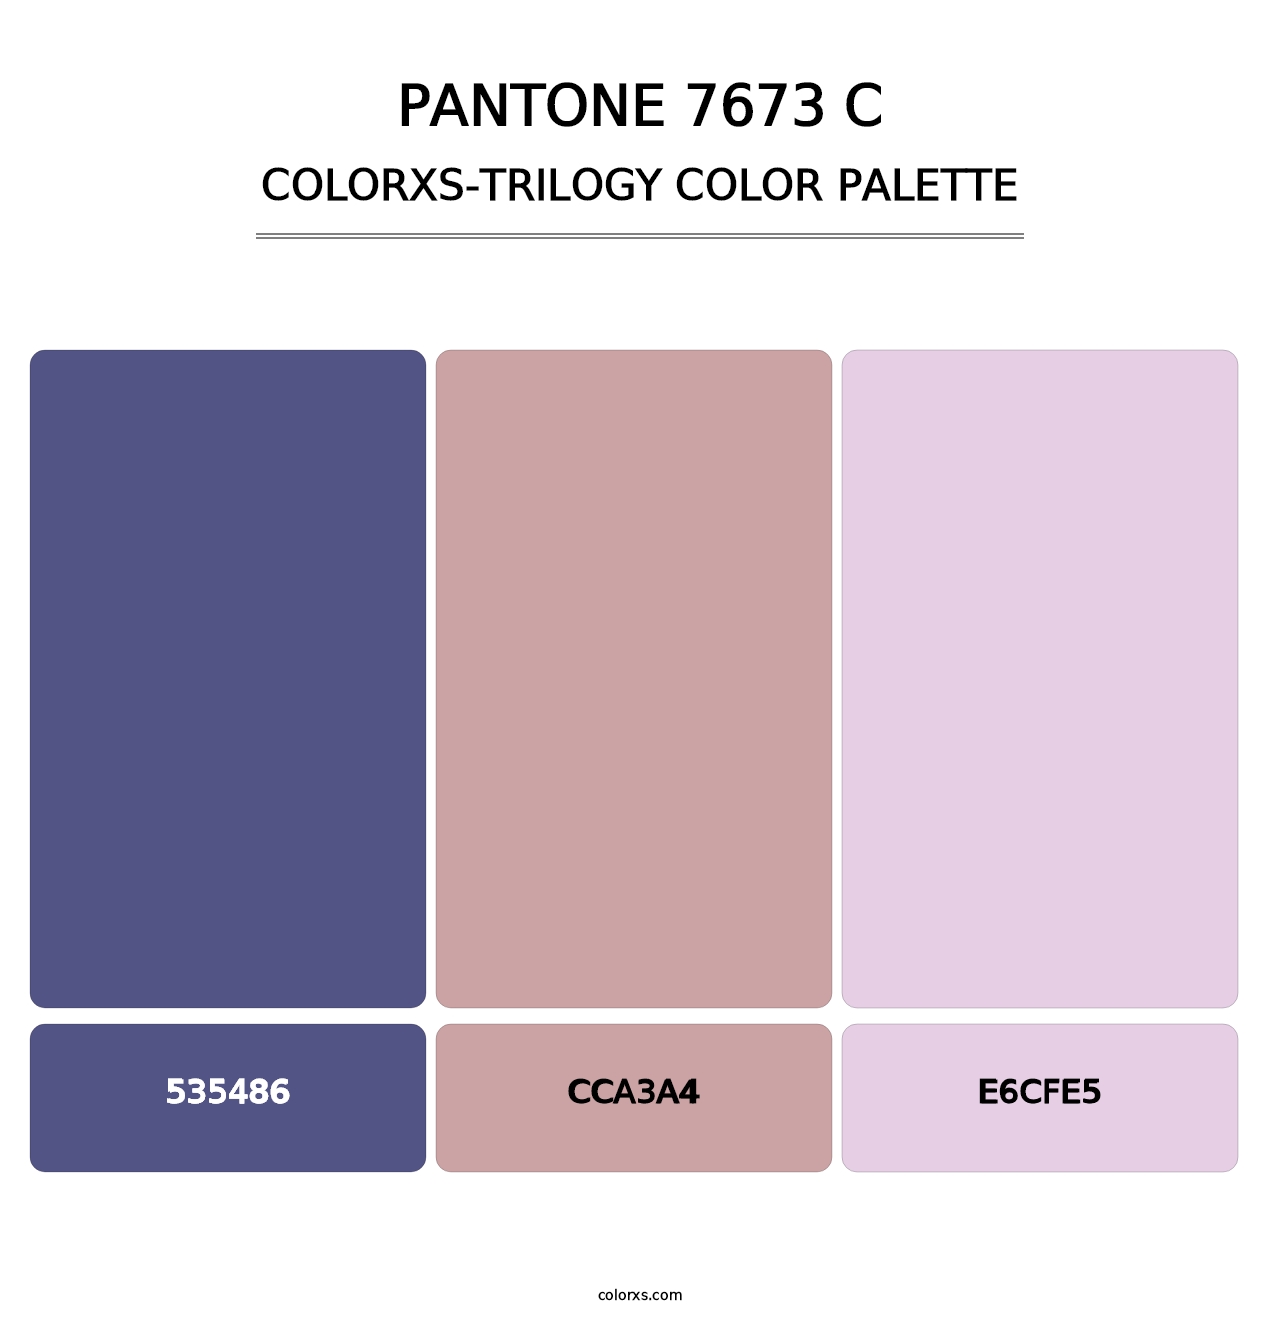 PANTONE 7673 C - Colorxs Trilogy Palette